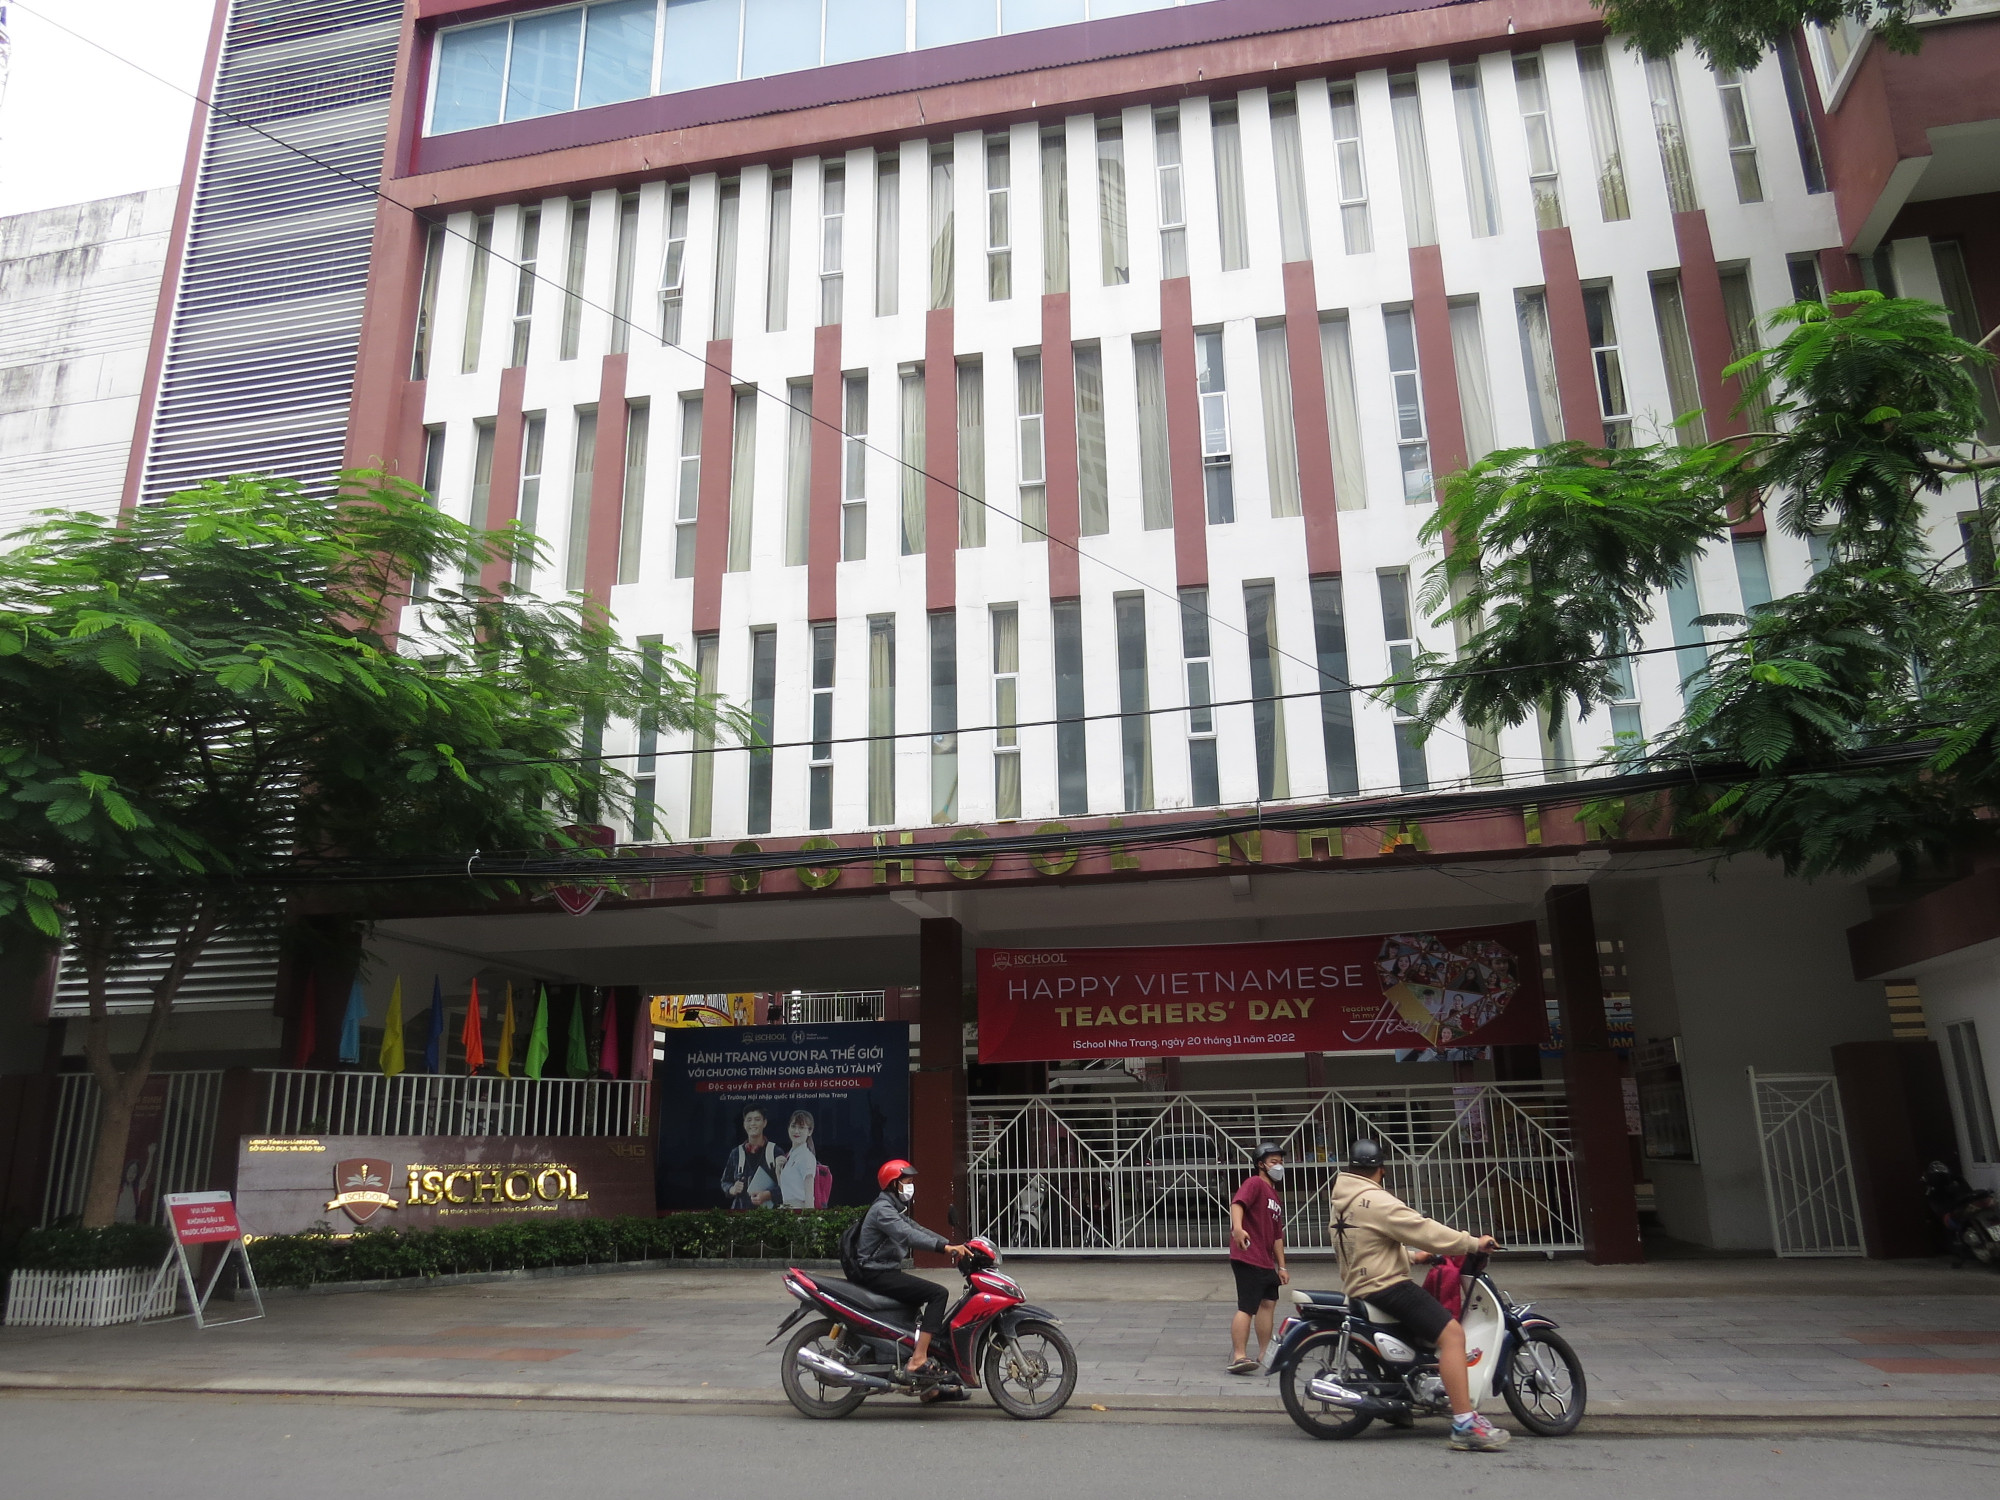 Trường iSchool Nha Trang thông báo sẽ tạm ngưng cung cấp dịch vụ bán trú từ ngày 21/11 cho đến khi có thông báo mới